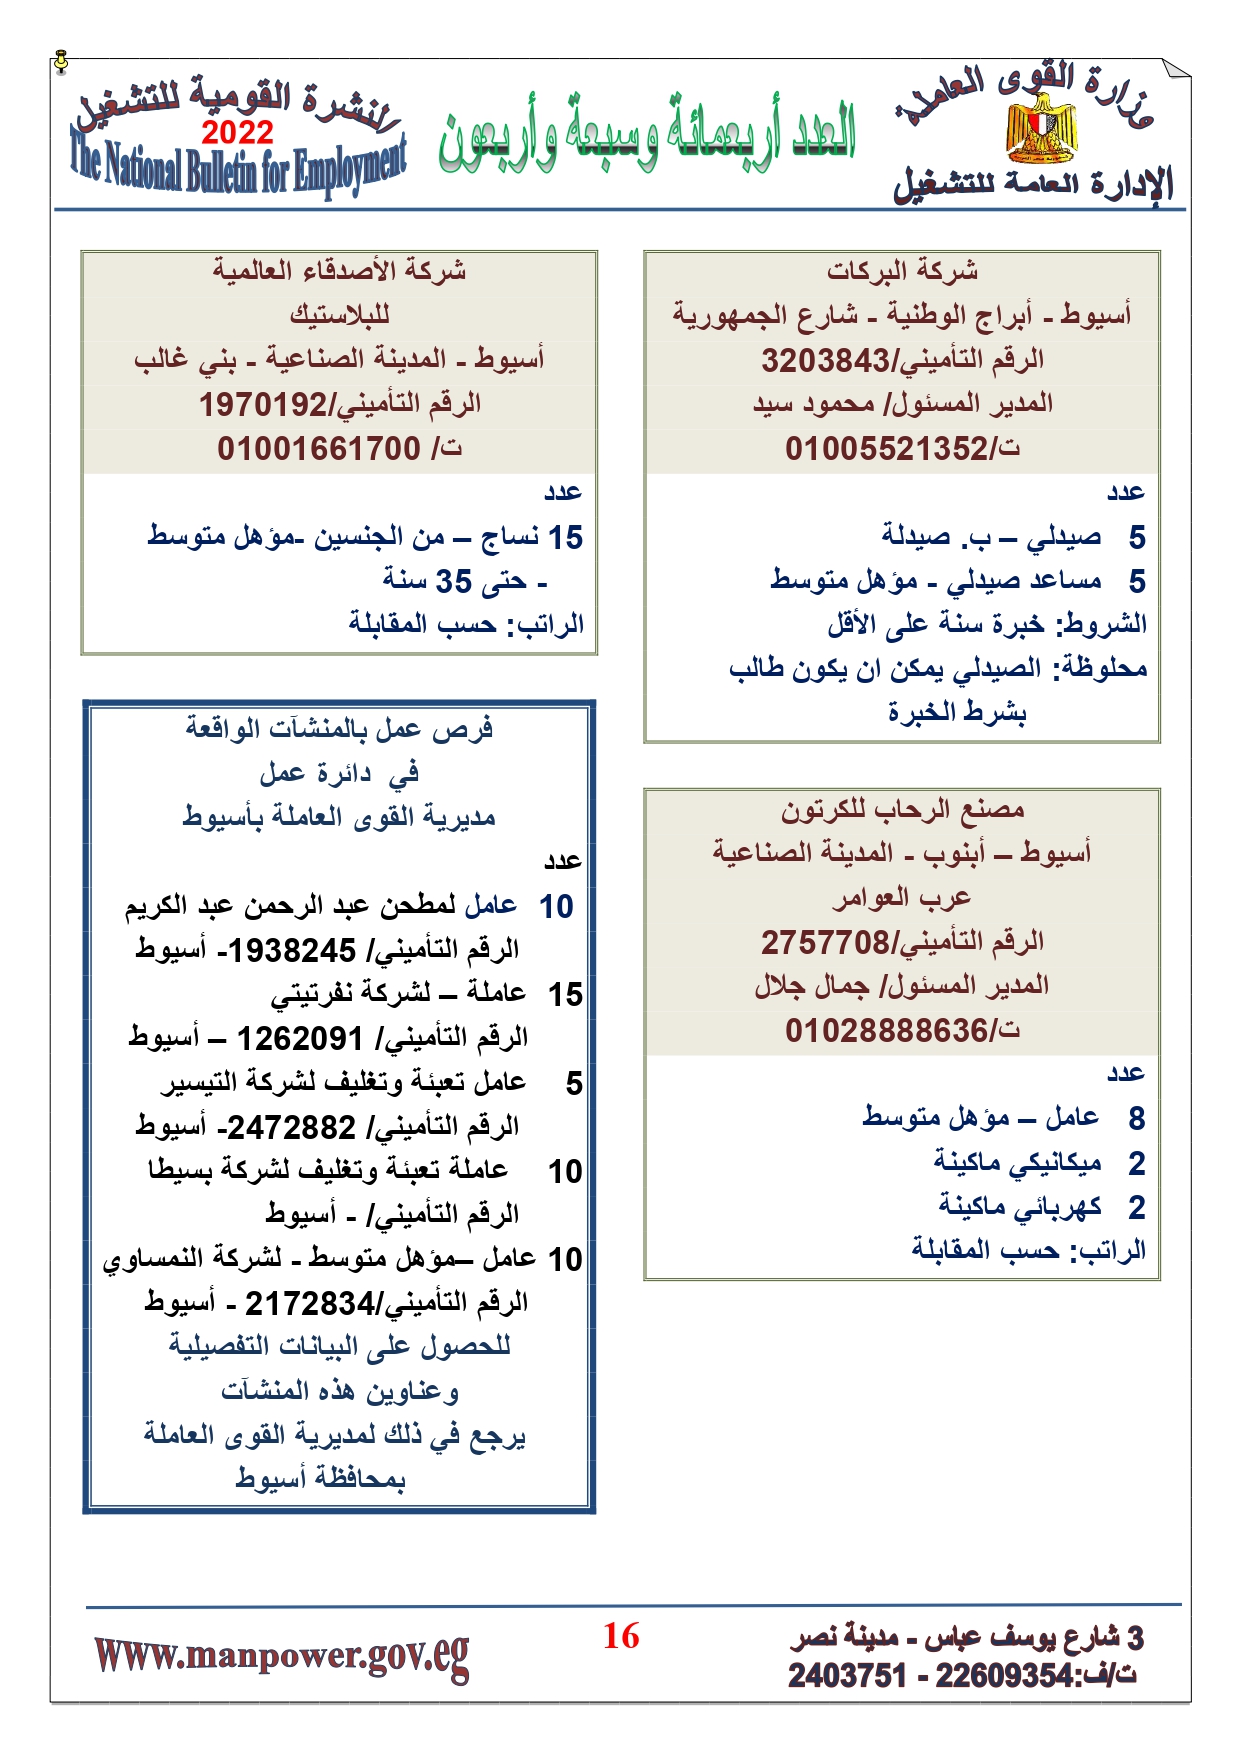 وظائف خالية بمصر وزارة القوي العاملة تعلن عن 2530 وظيفة شاغرة لجميع المؤهلات خلال فبراير ومارس 2022 12